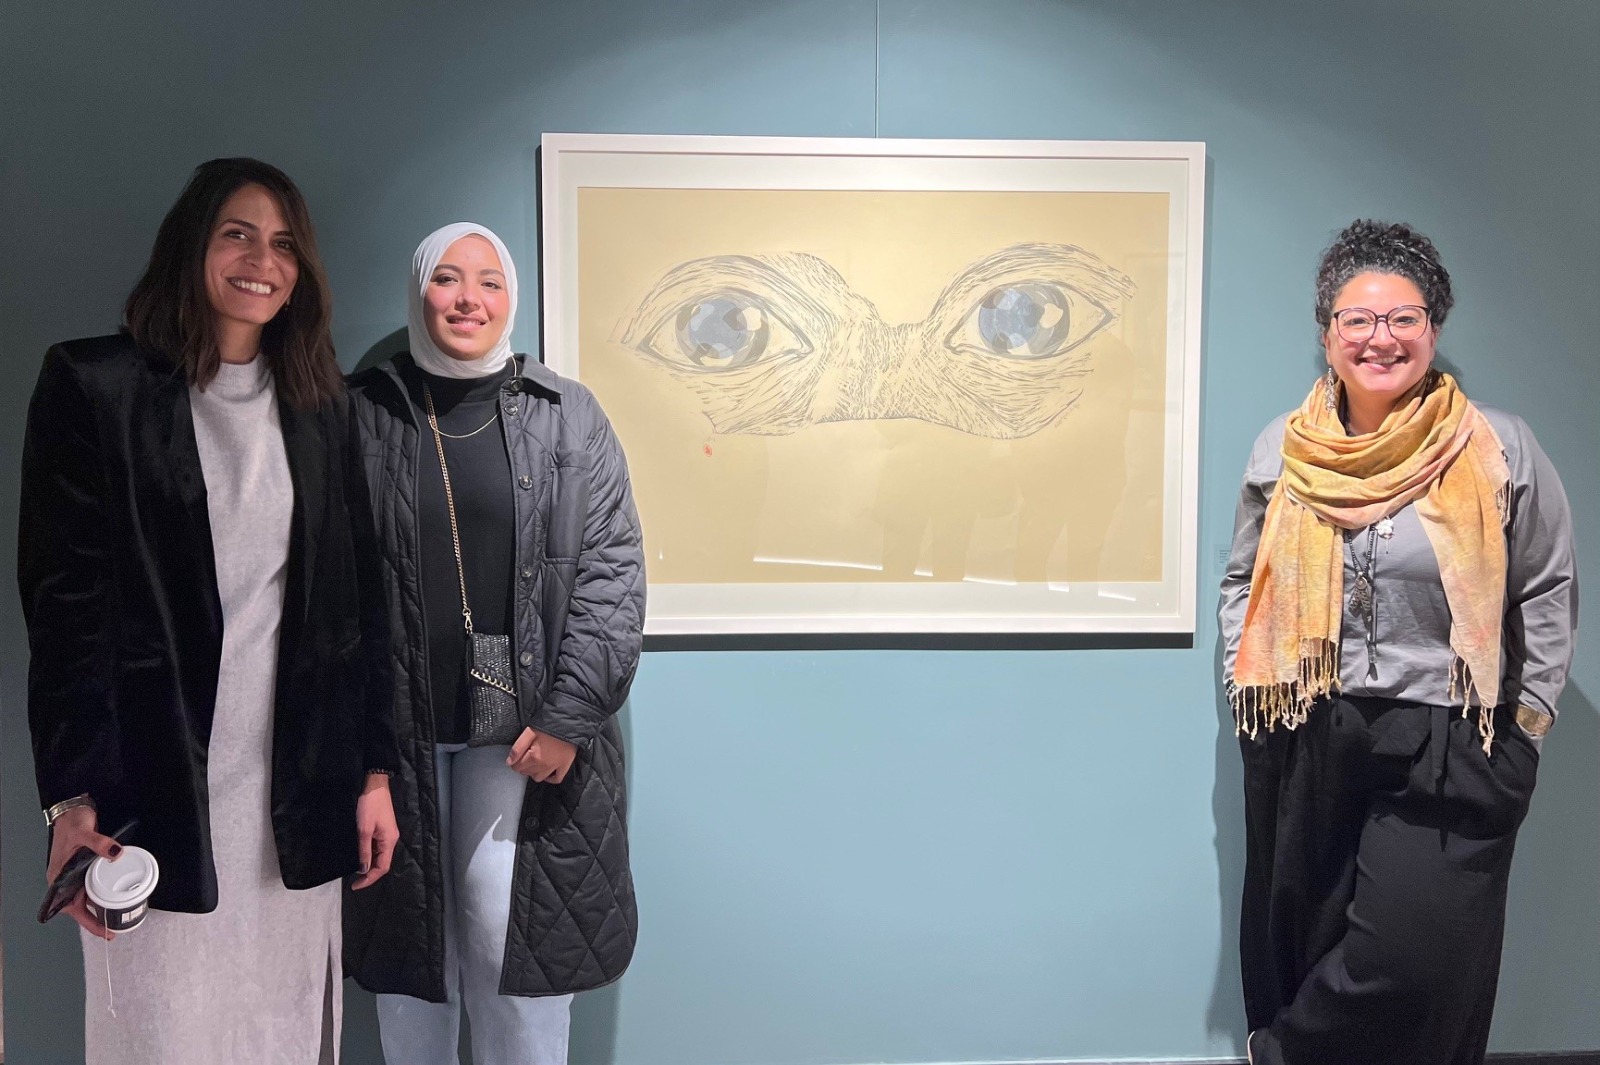 الفنانات الثلاث في معرض "خطوط حميمية"- الشرق